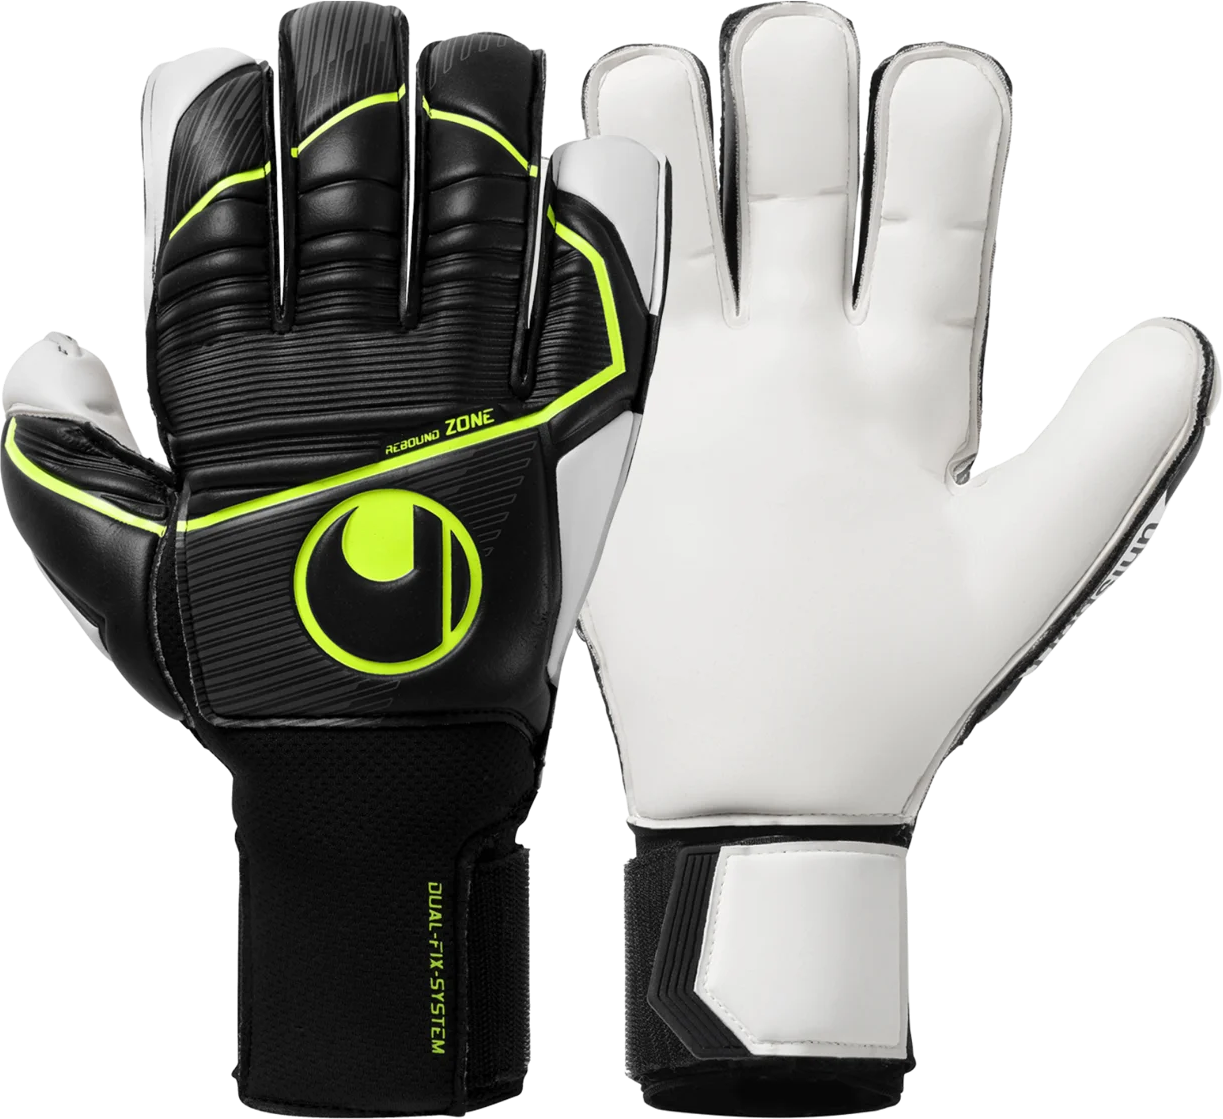 Goalkeeper's gloves Uhlsport Absolutgrip Flex Frame Carbon